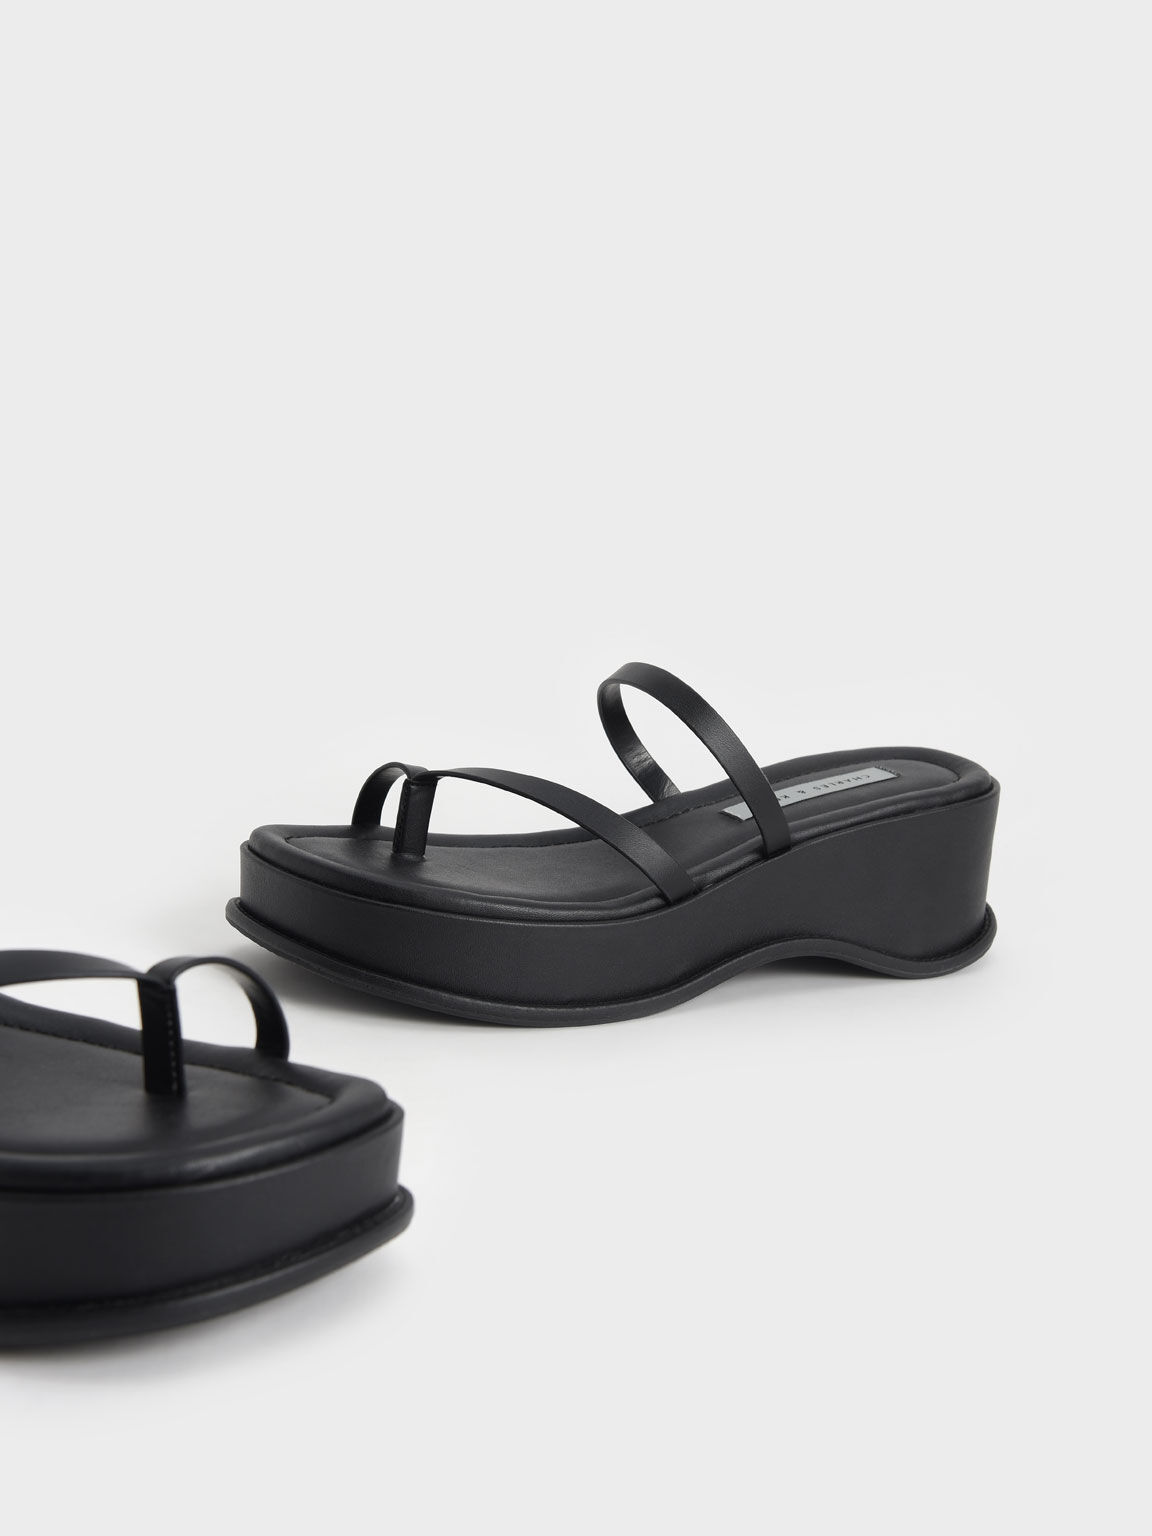 Toe Loop Flatform Sandals, Black, hi-res